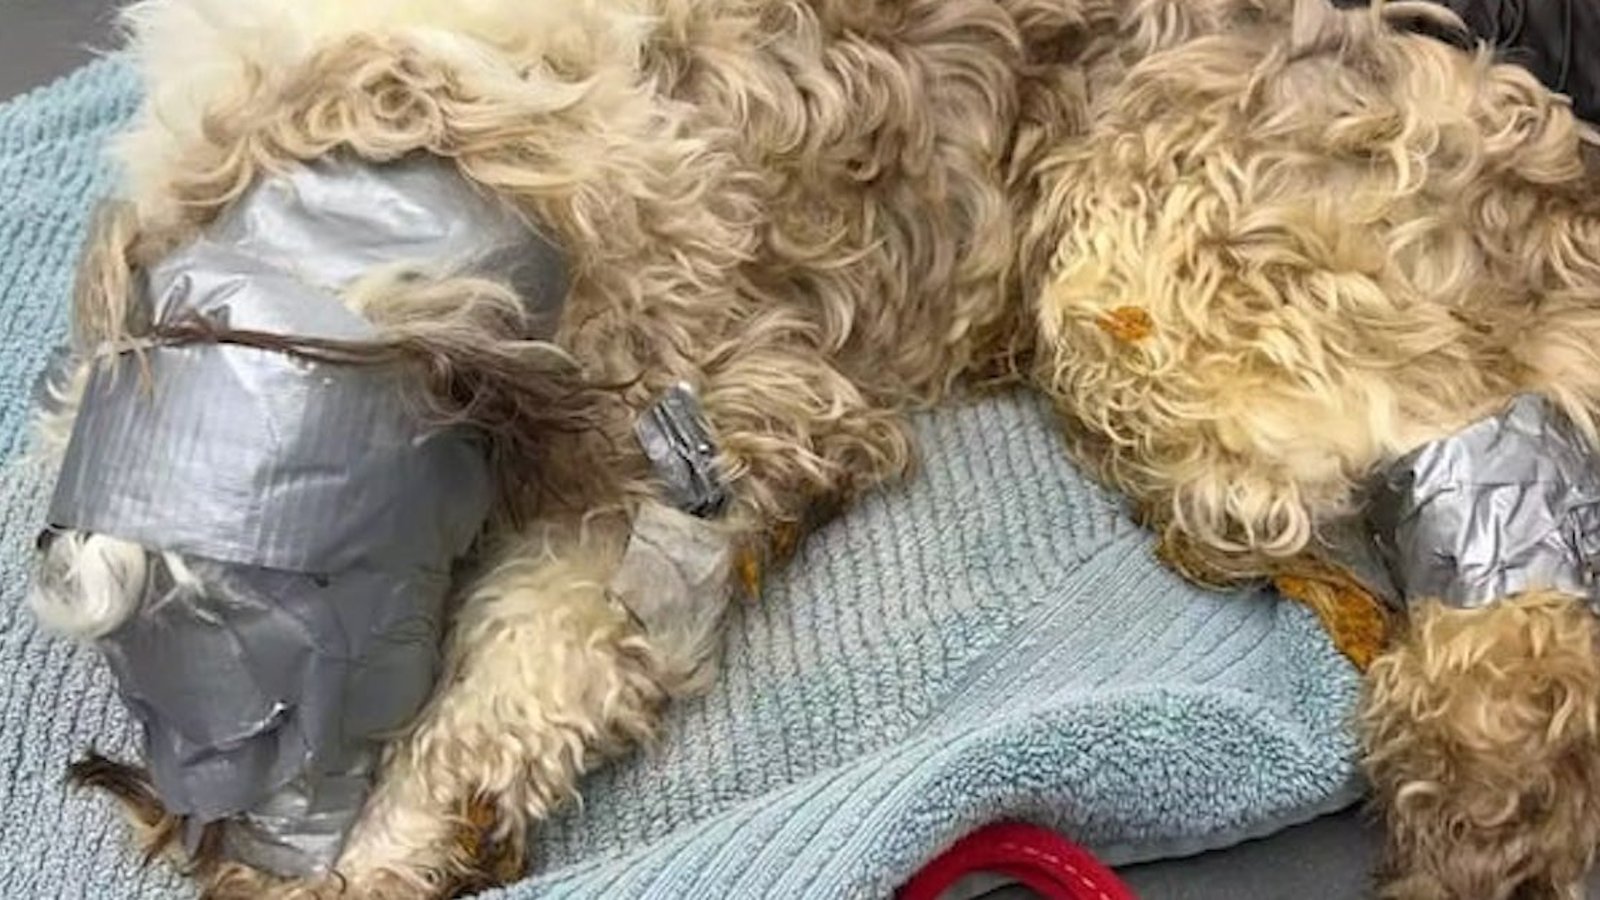 Acte de cruauté sans nom: un chien  a été trouvé dans une poubelle recouvert de ruban adhésif 